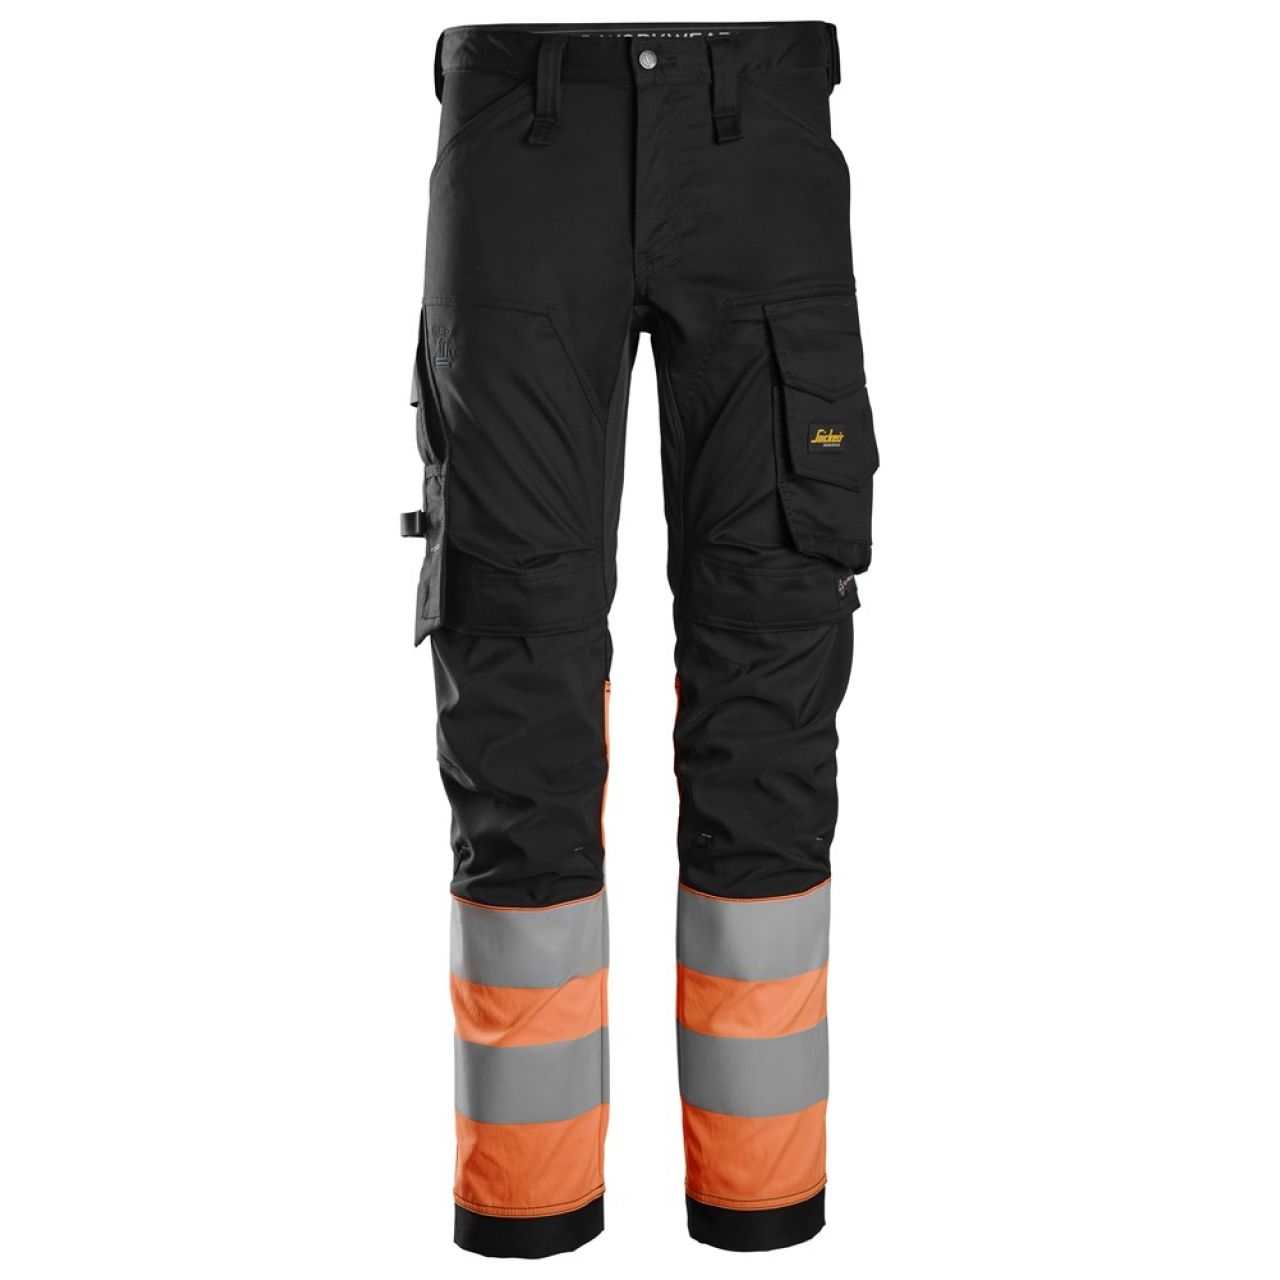 6334 Pantalones largos de trabajo elásticos de alta visibilidad clase 1 negro-naranja talla 120